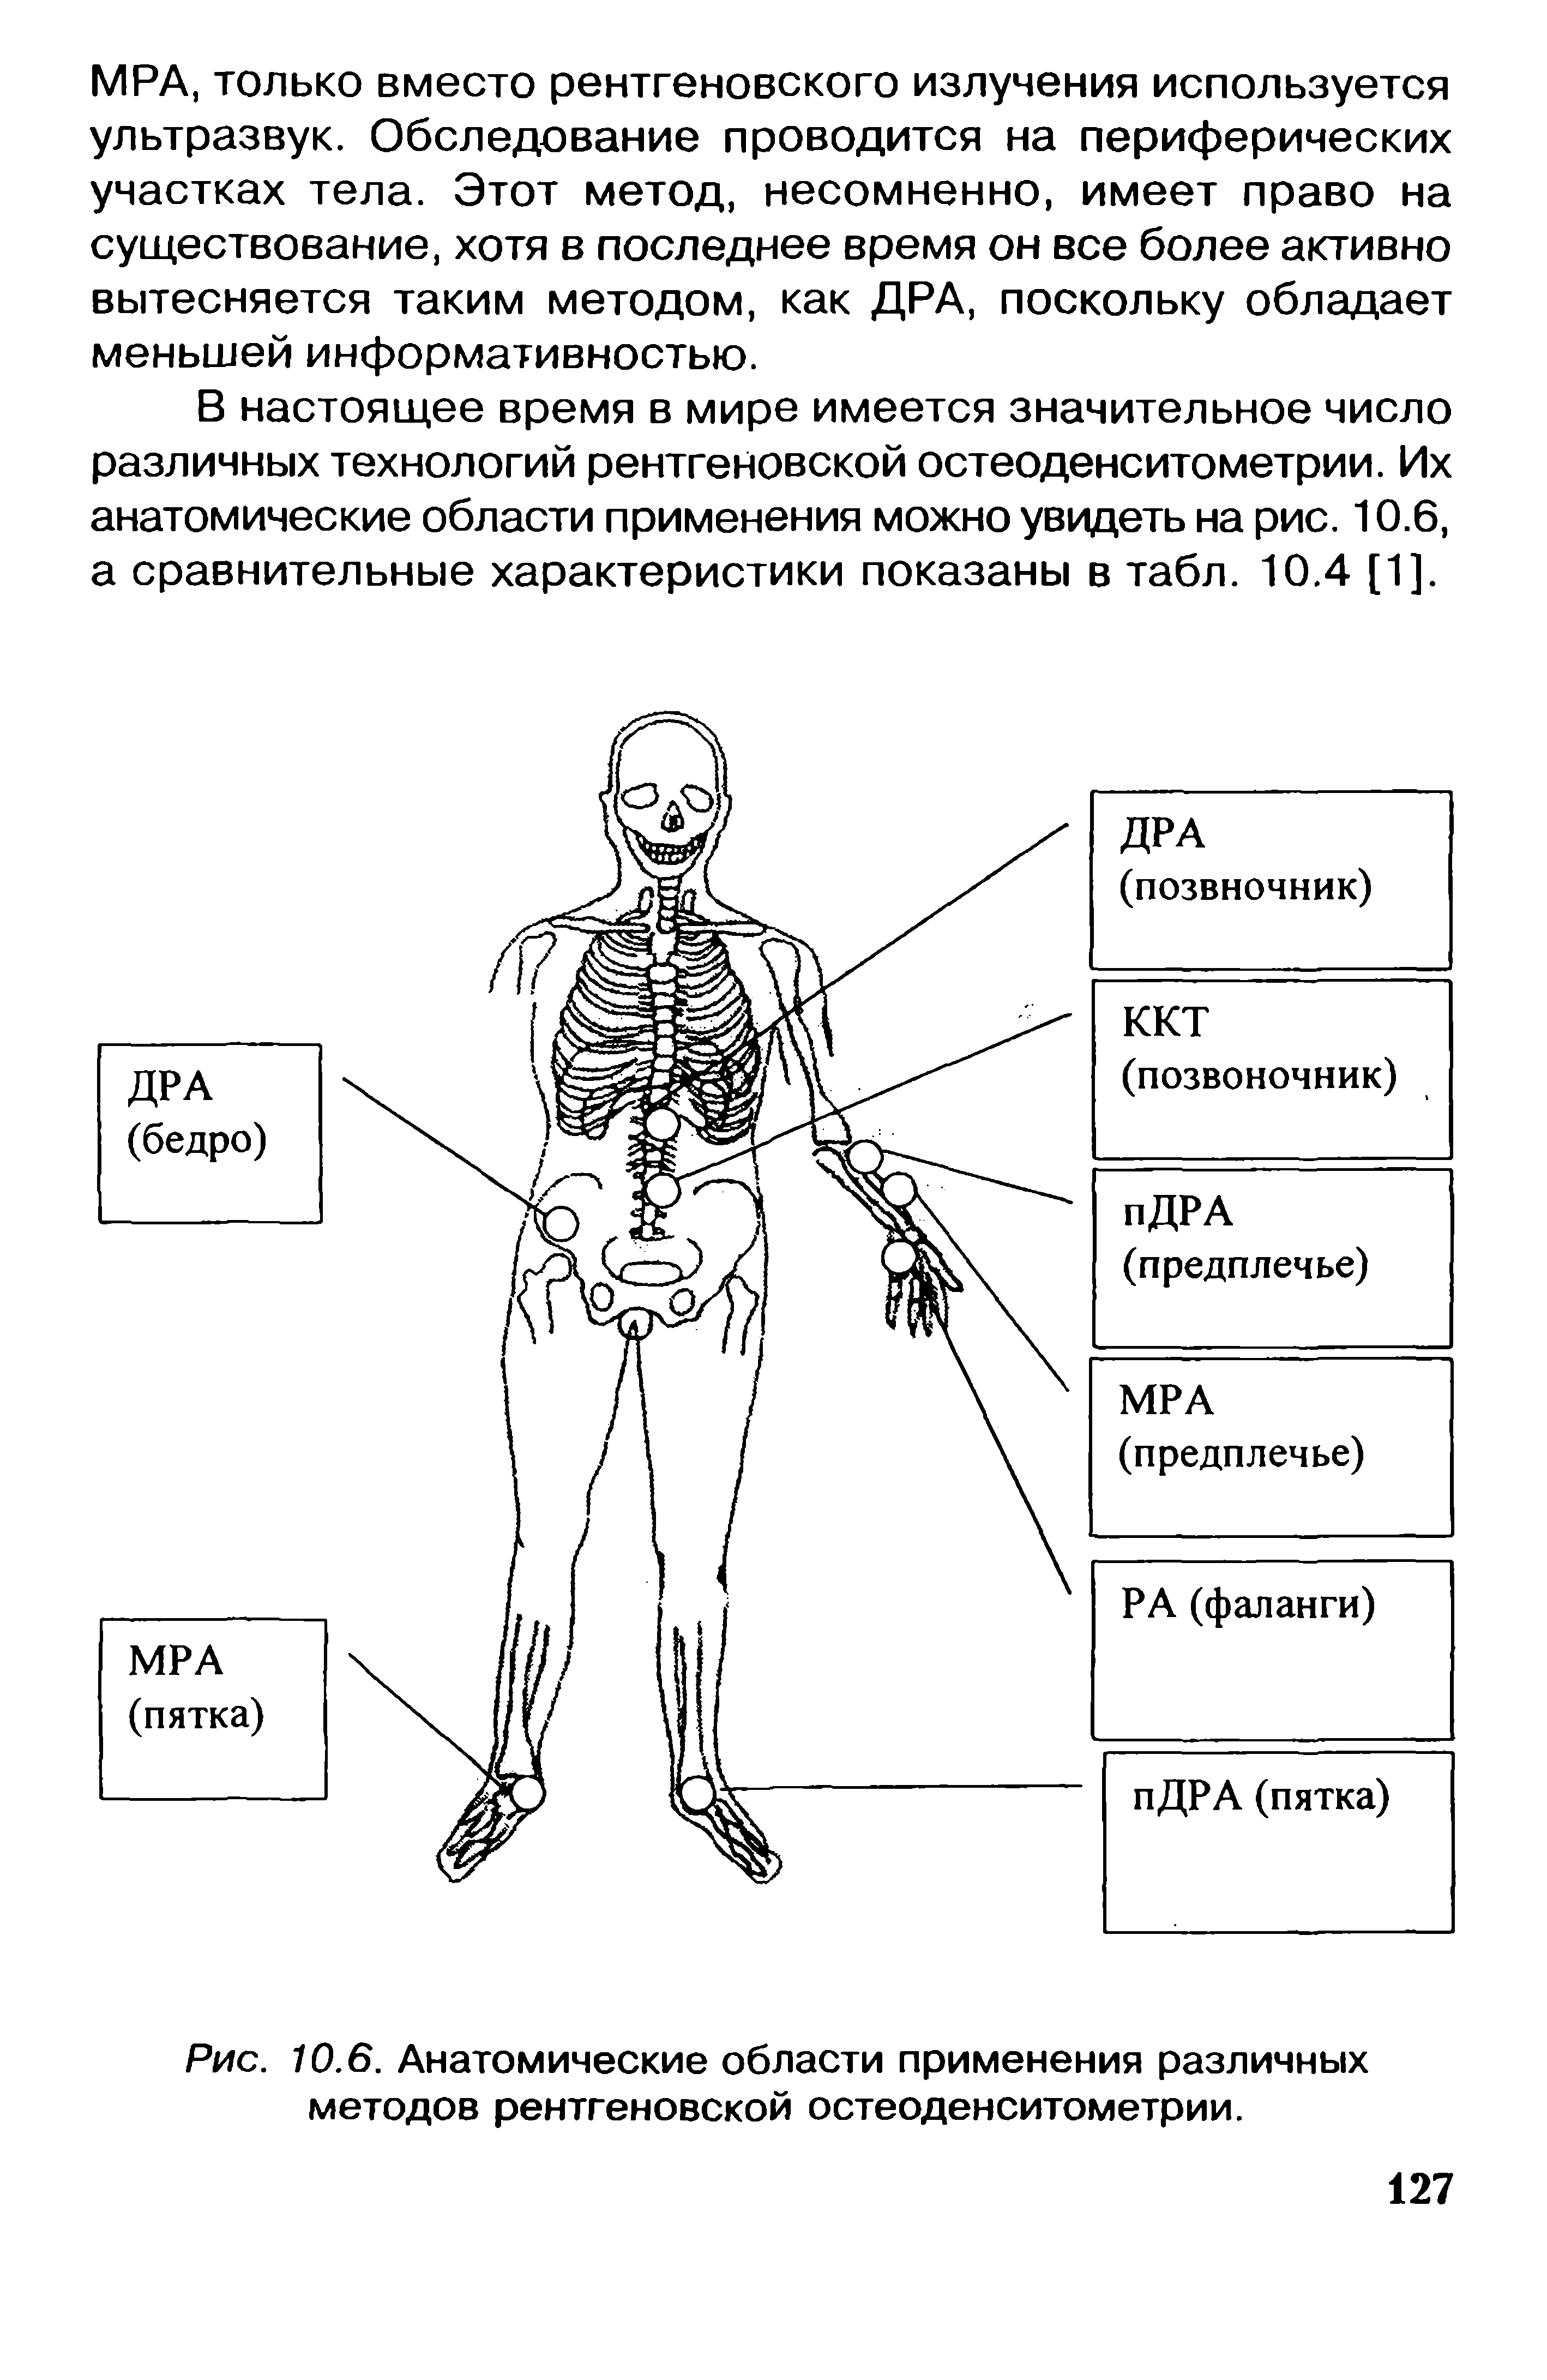 Рис. 10.6. Анатомические области применения различных методов рентгеновской остеоденситометрии.